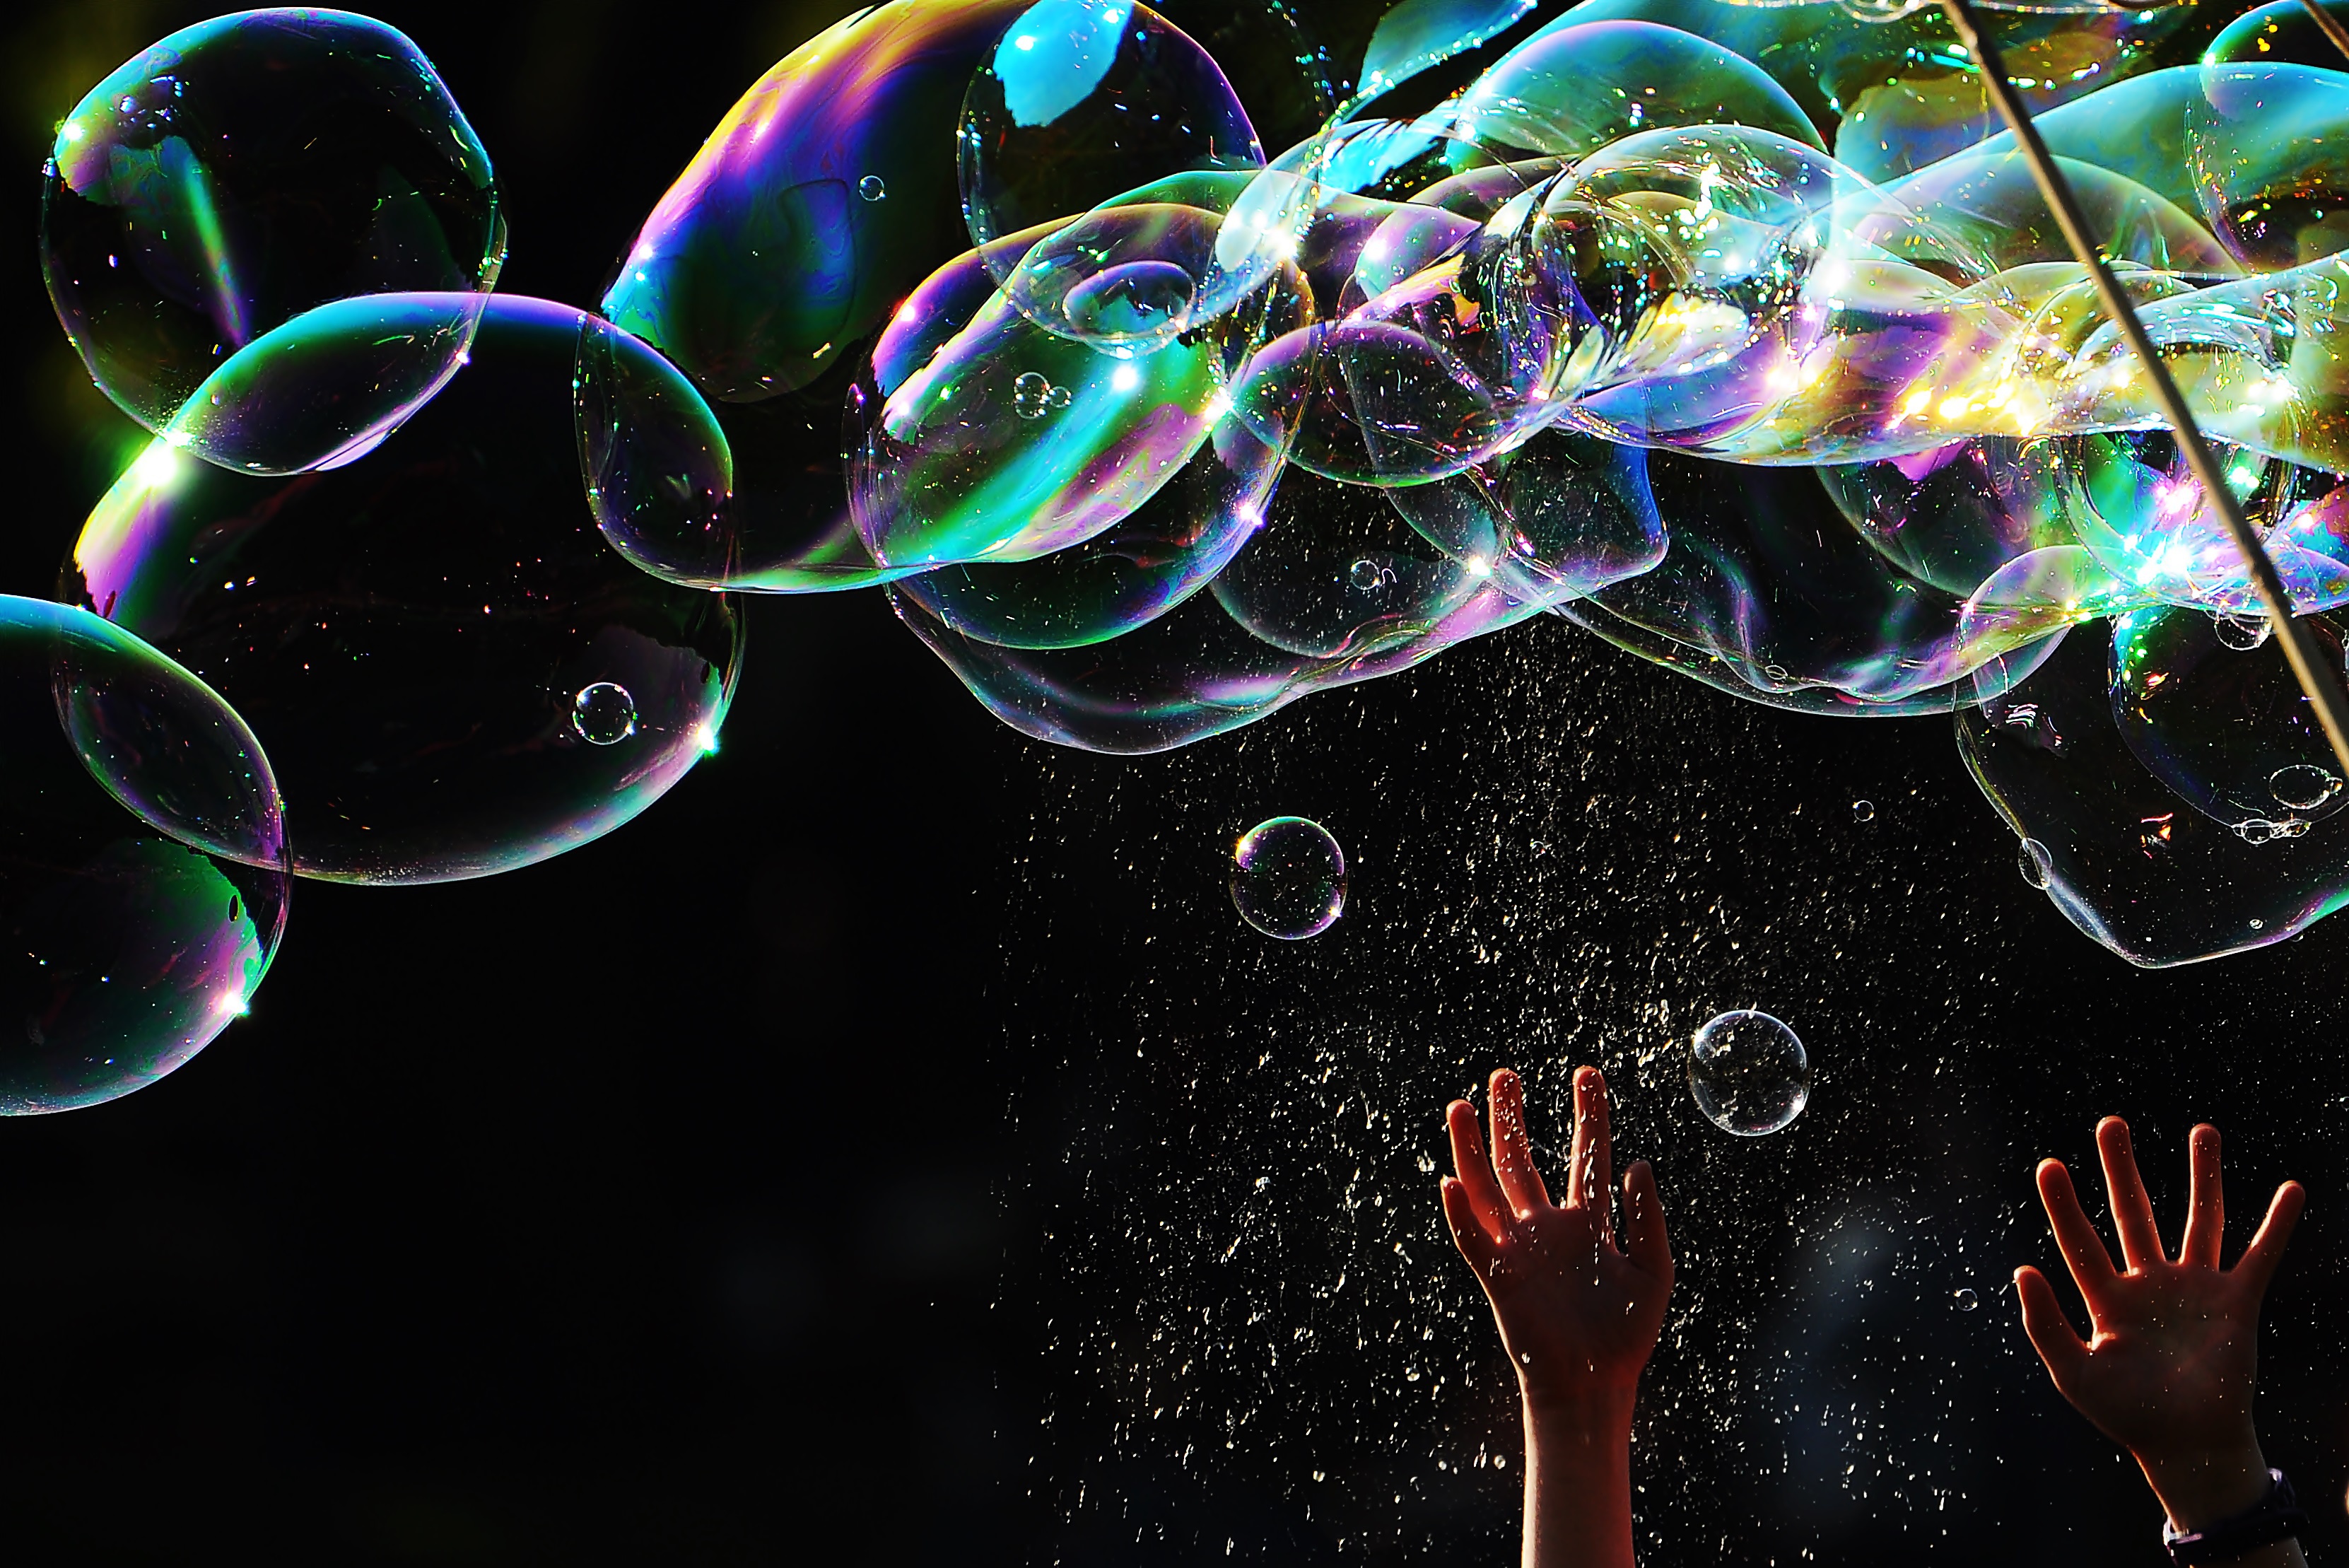 Tuban giant bubbles et stick (50cm) Big Bubbles of Happiness